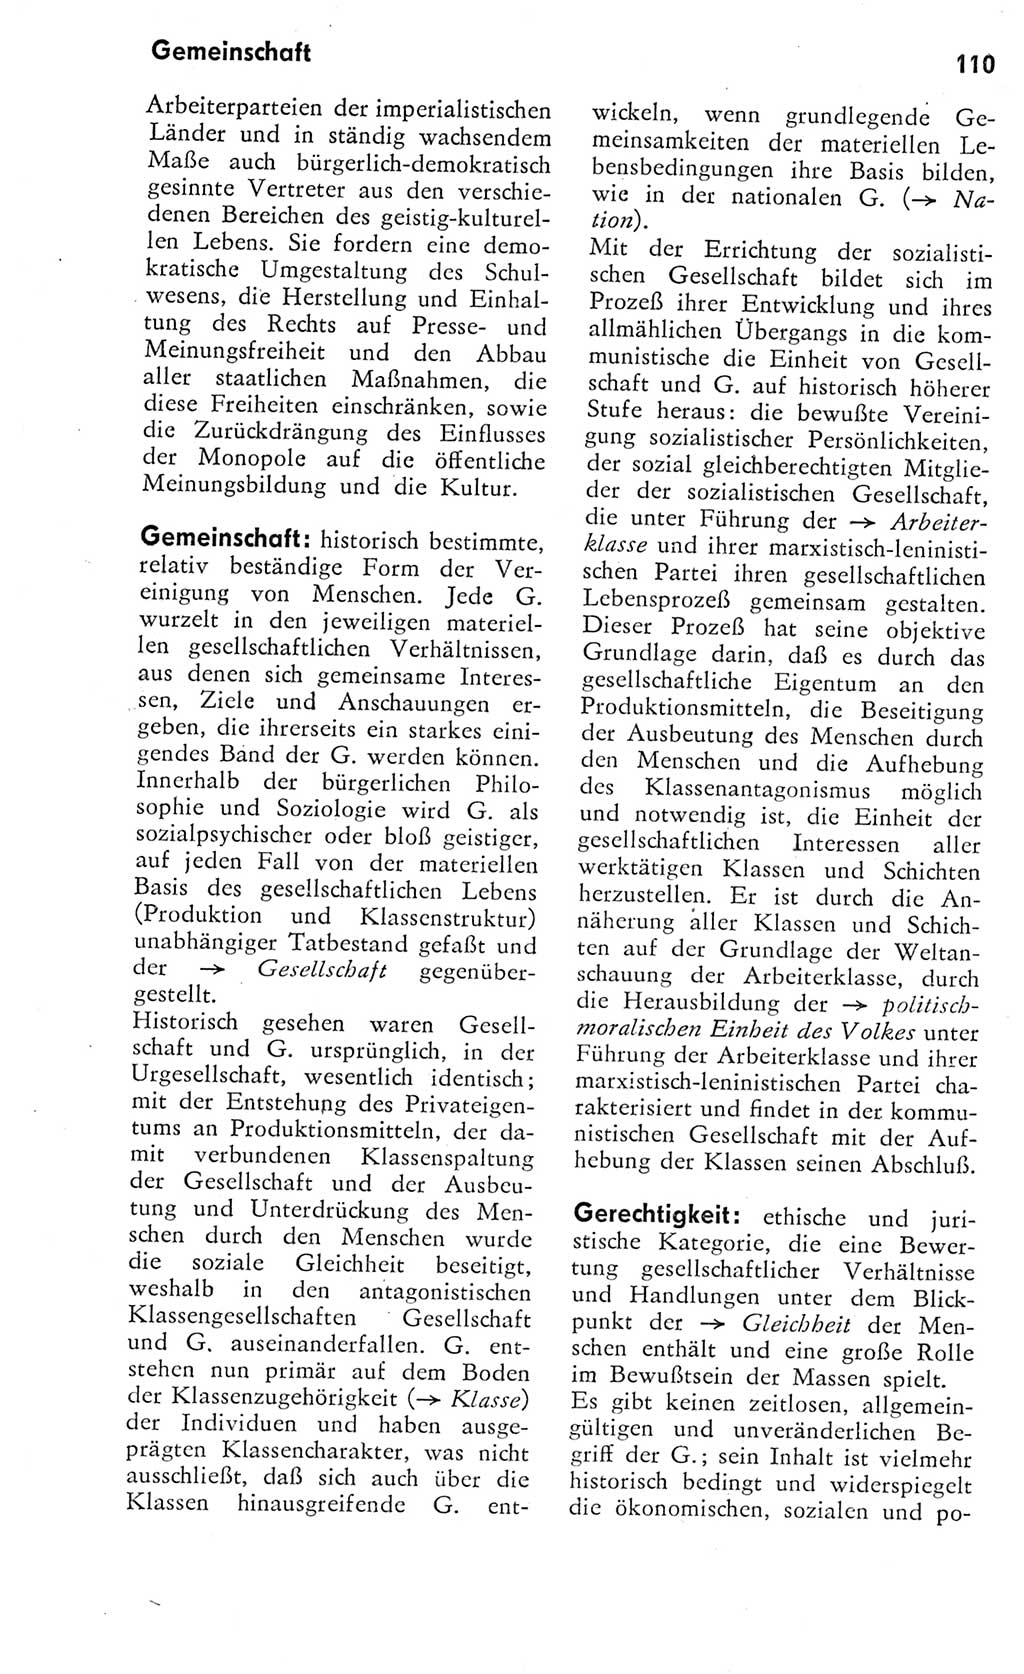 Kleines Wörterbuch der marxistisch-leninistischen Philosophie [Deutsche Demokratische Republik (DDR)] 1975, Seite 110 (Kl. Wb. ML Phil. DDR 1975, S. 110)